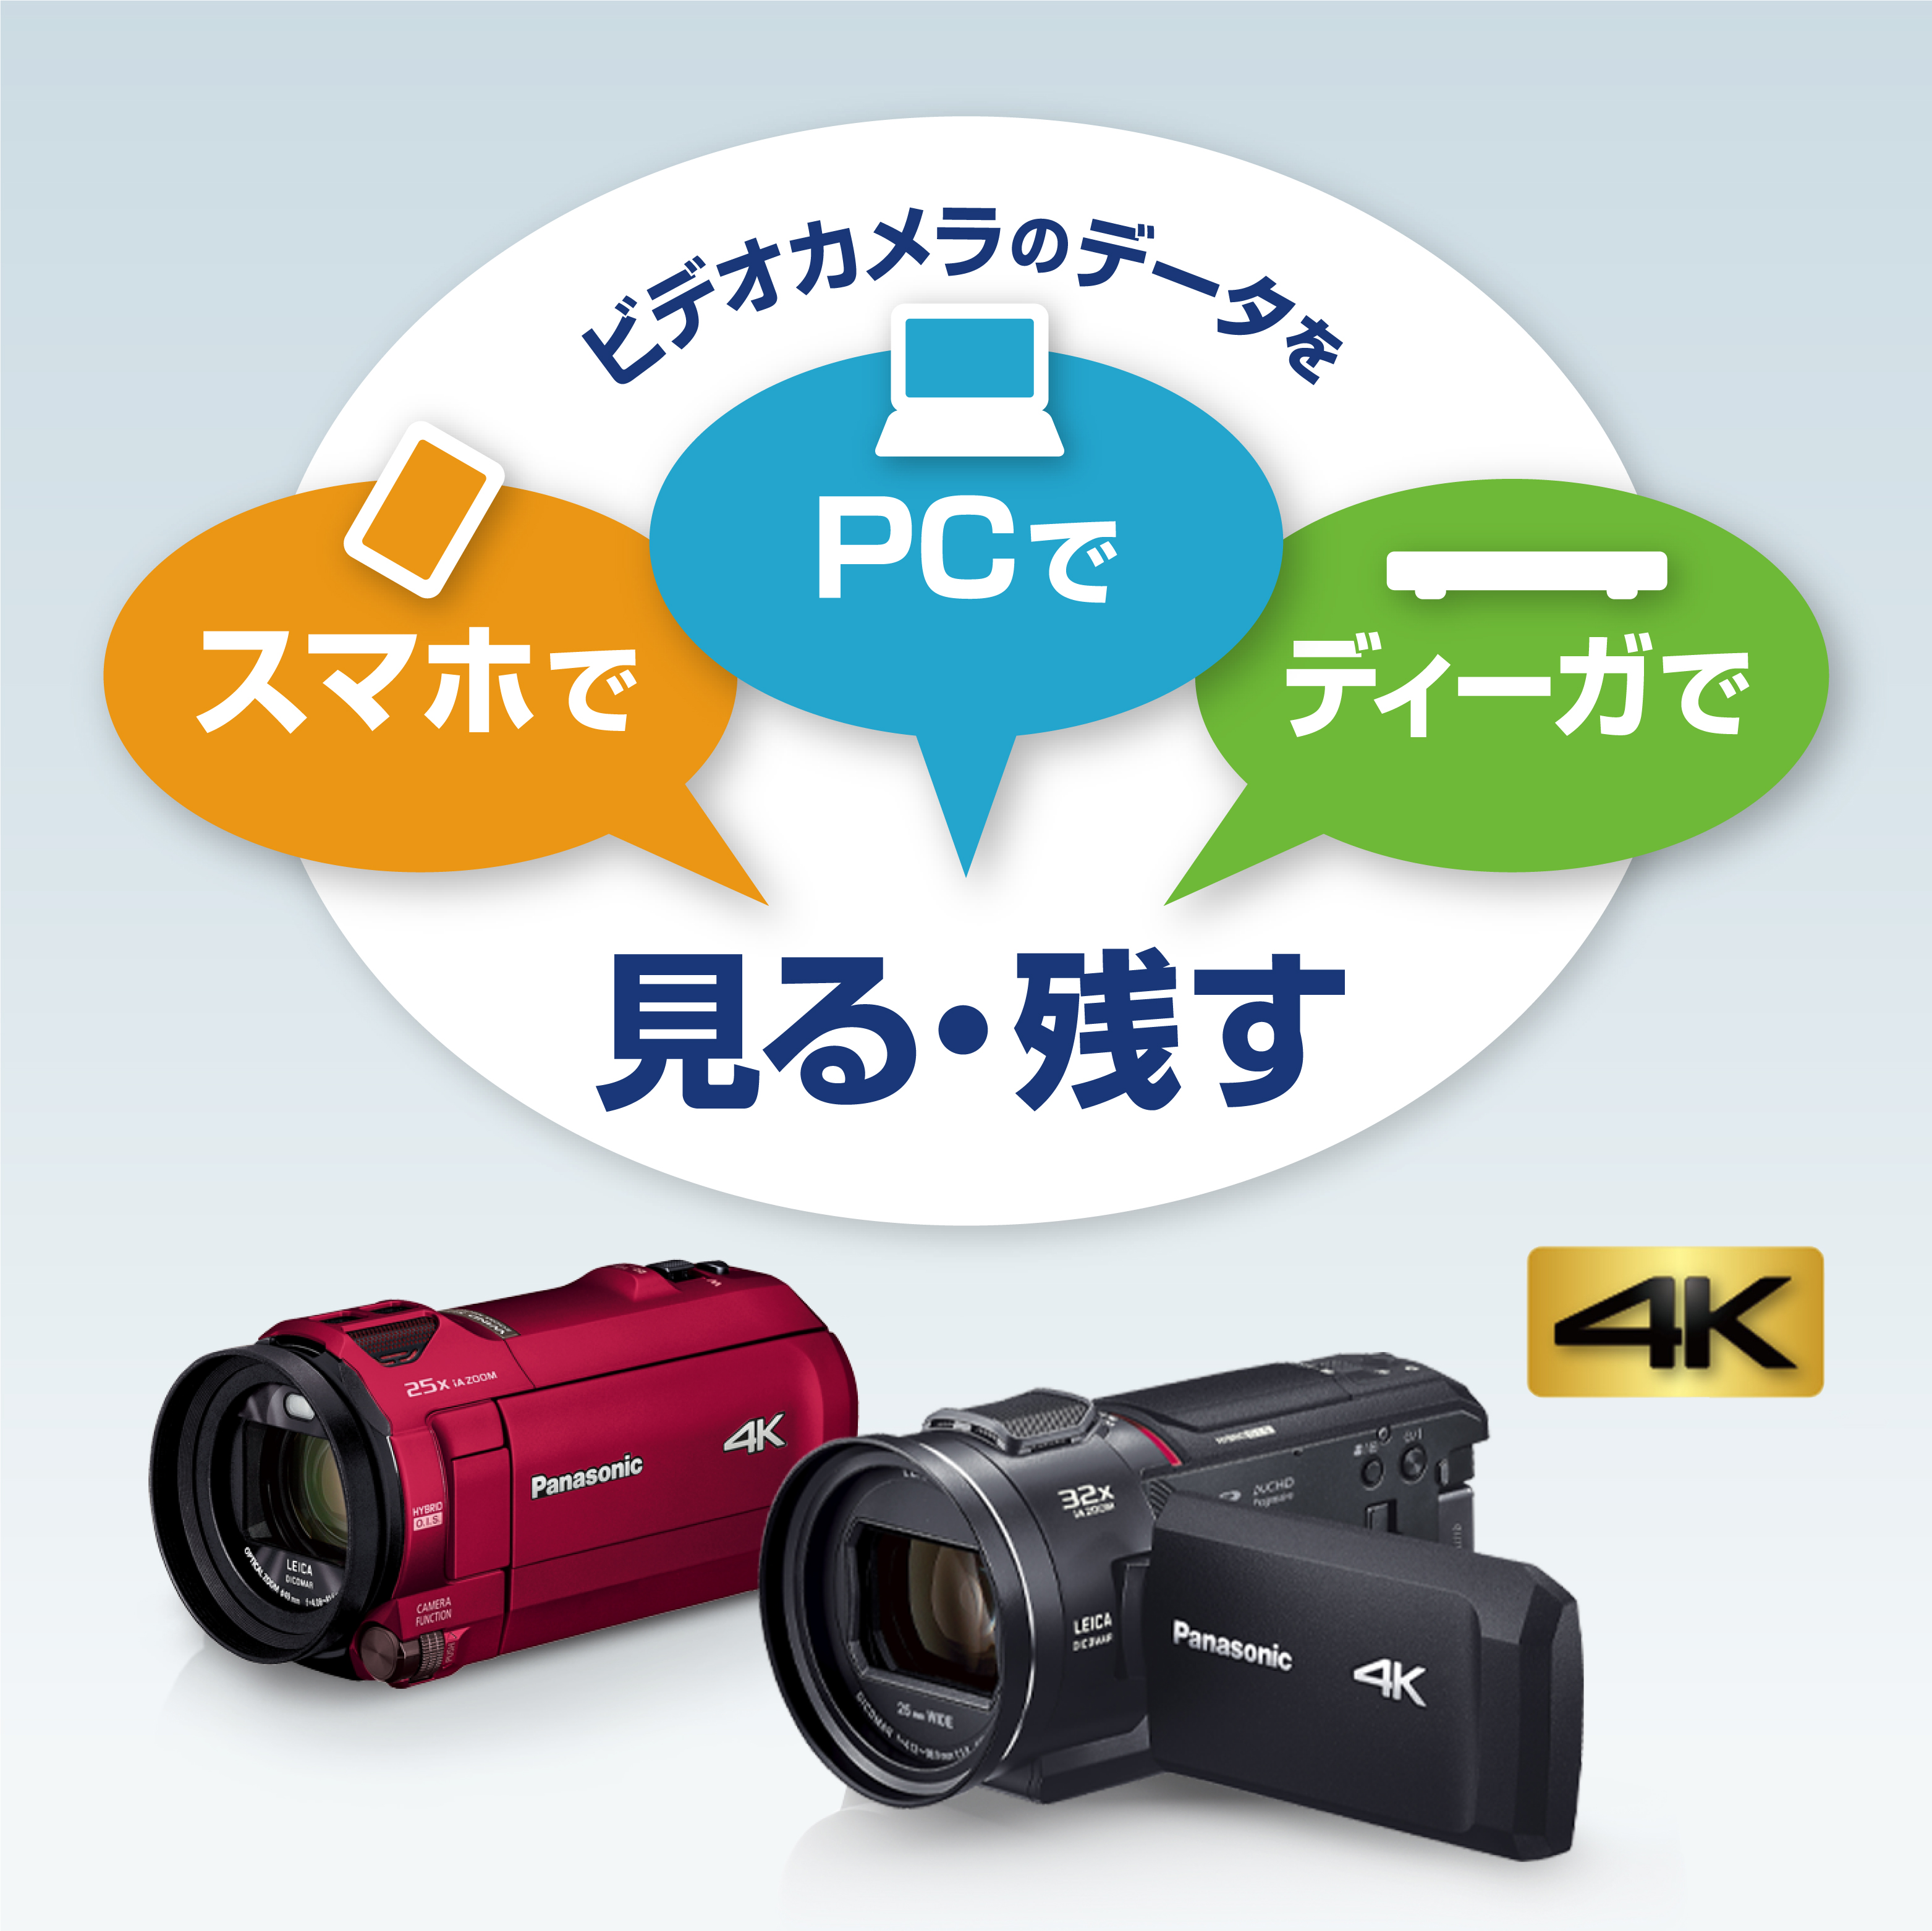 ビデオカメラのデータを見る・残す | デジタルビデオカメラ | Panasonic